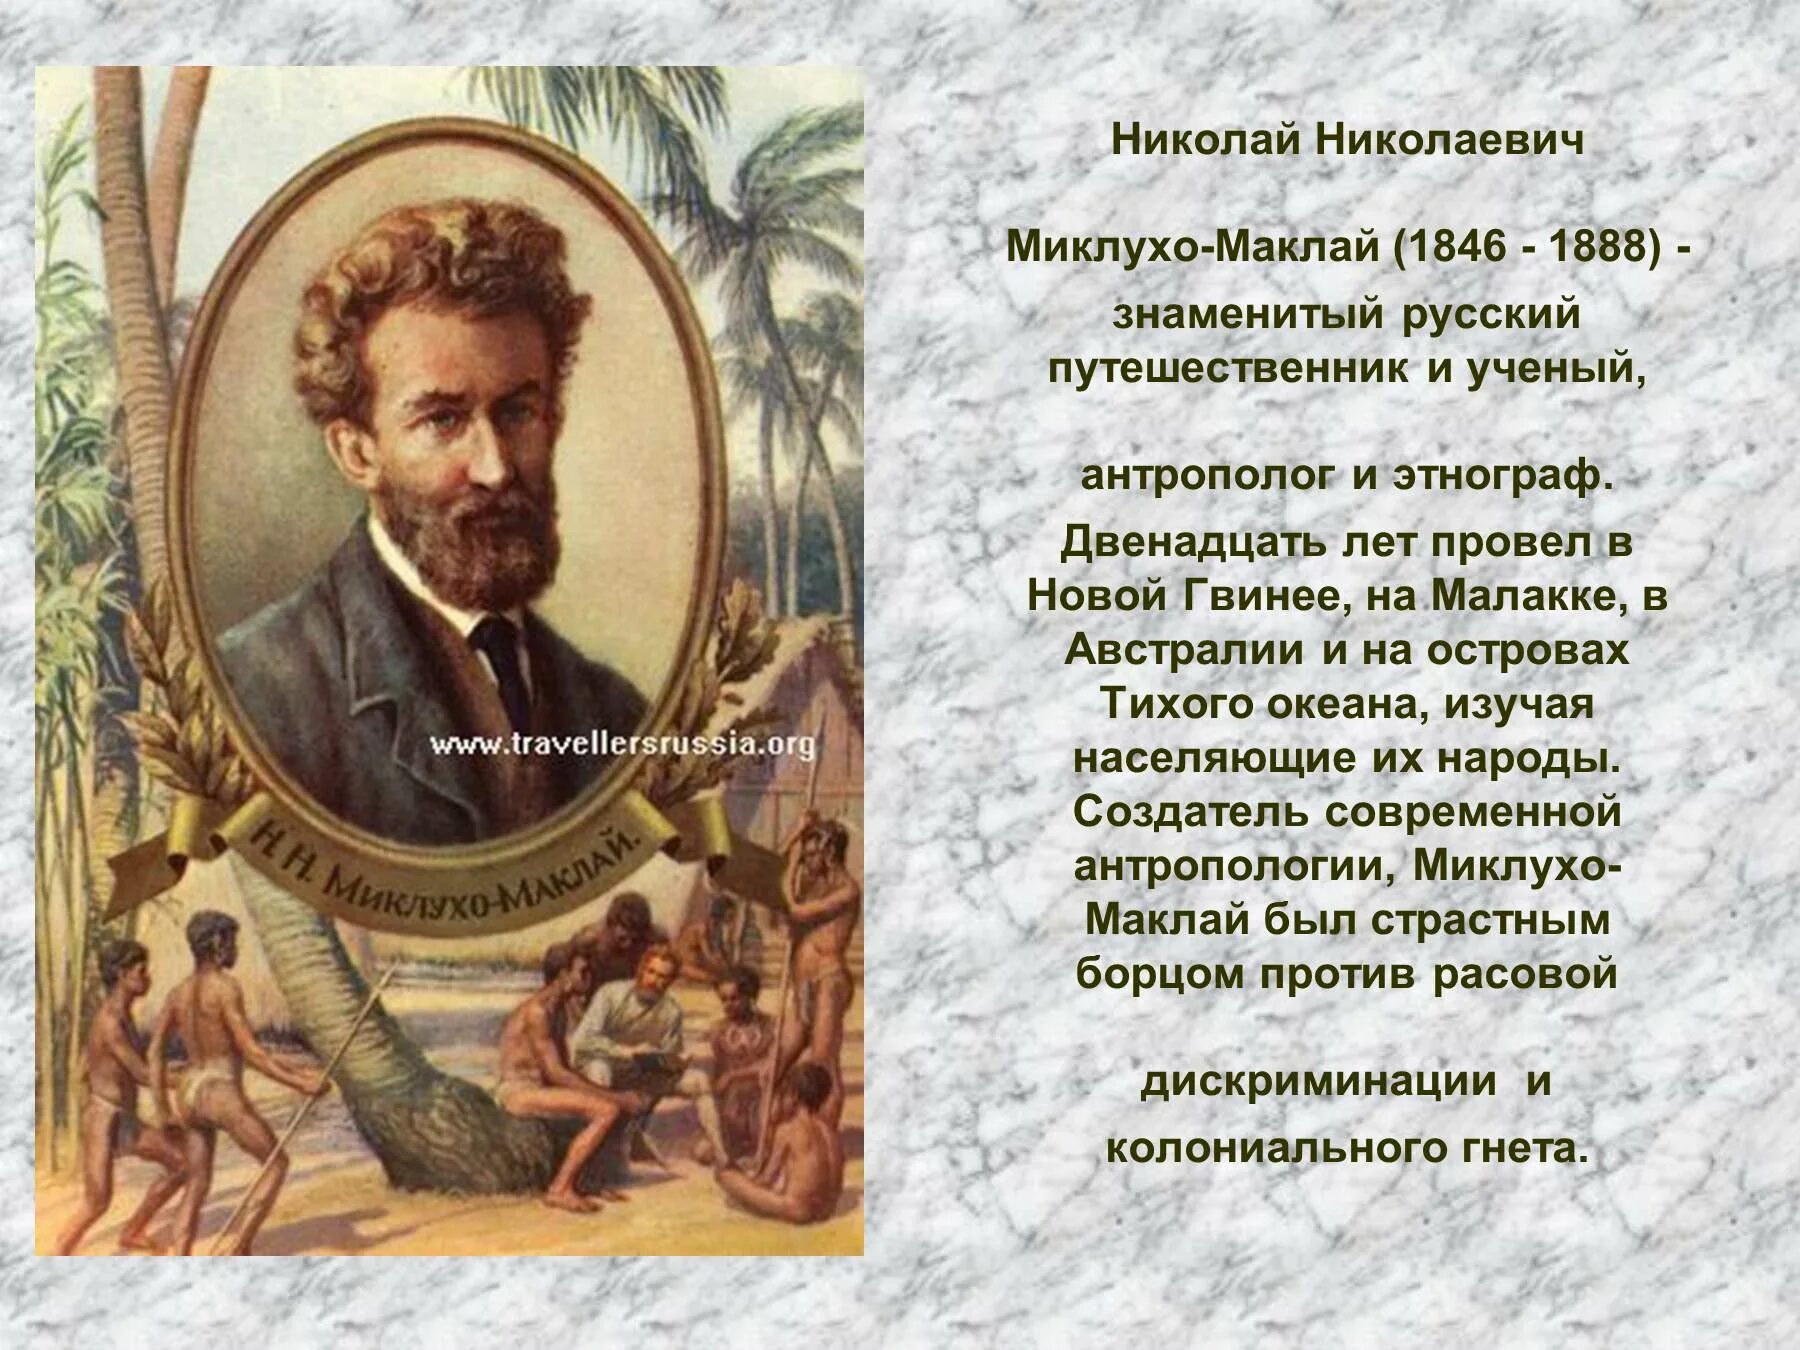 Николаем Николаевичем Миклухо-Маклаем (1846—1888).. Открытия великих русских путешественников